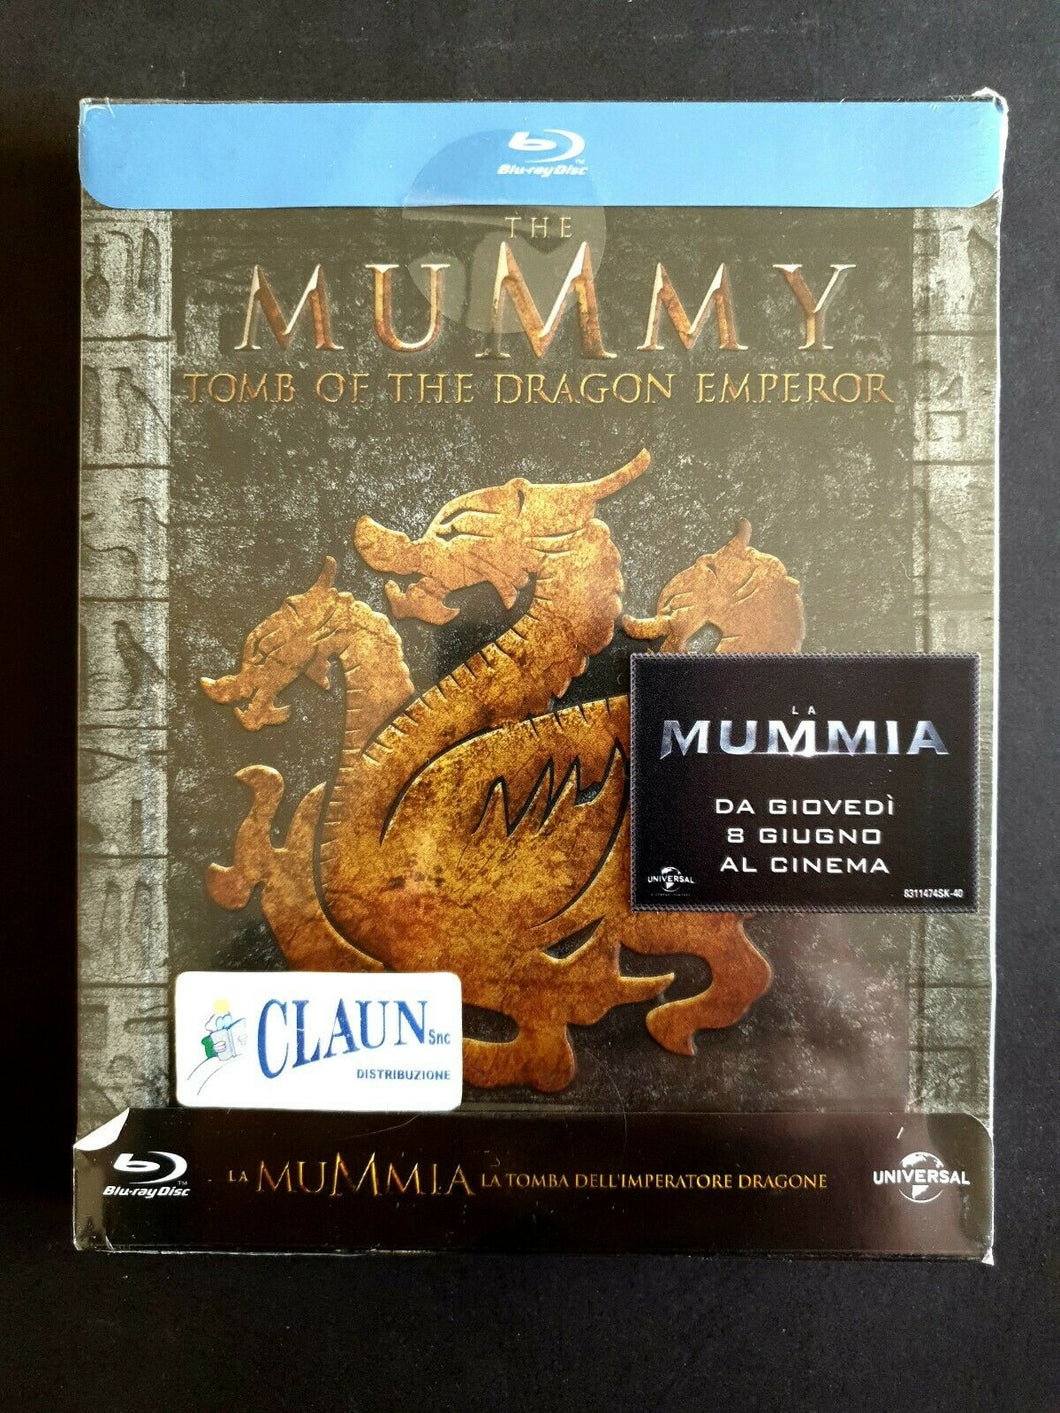 La Mummia La Tomba Dell’Imperatore Dragone Blu-Ray Disc Nuovo Sigillato